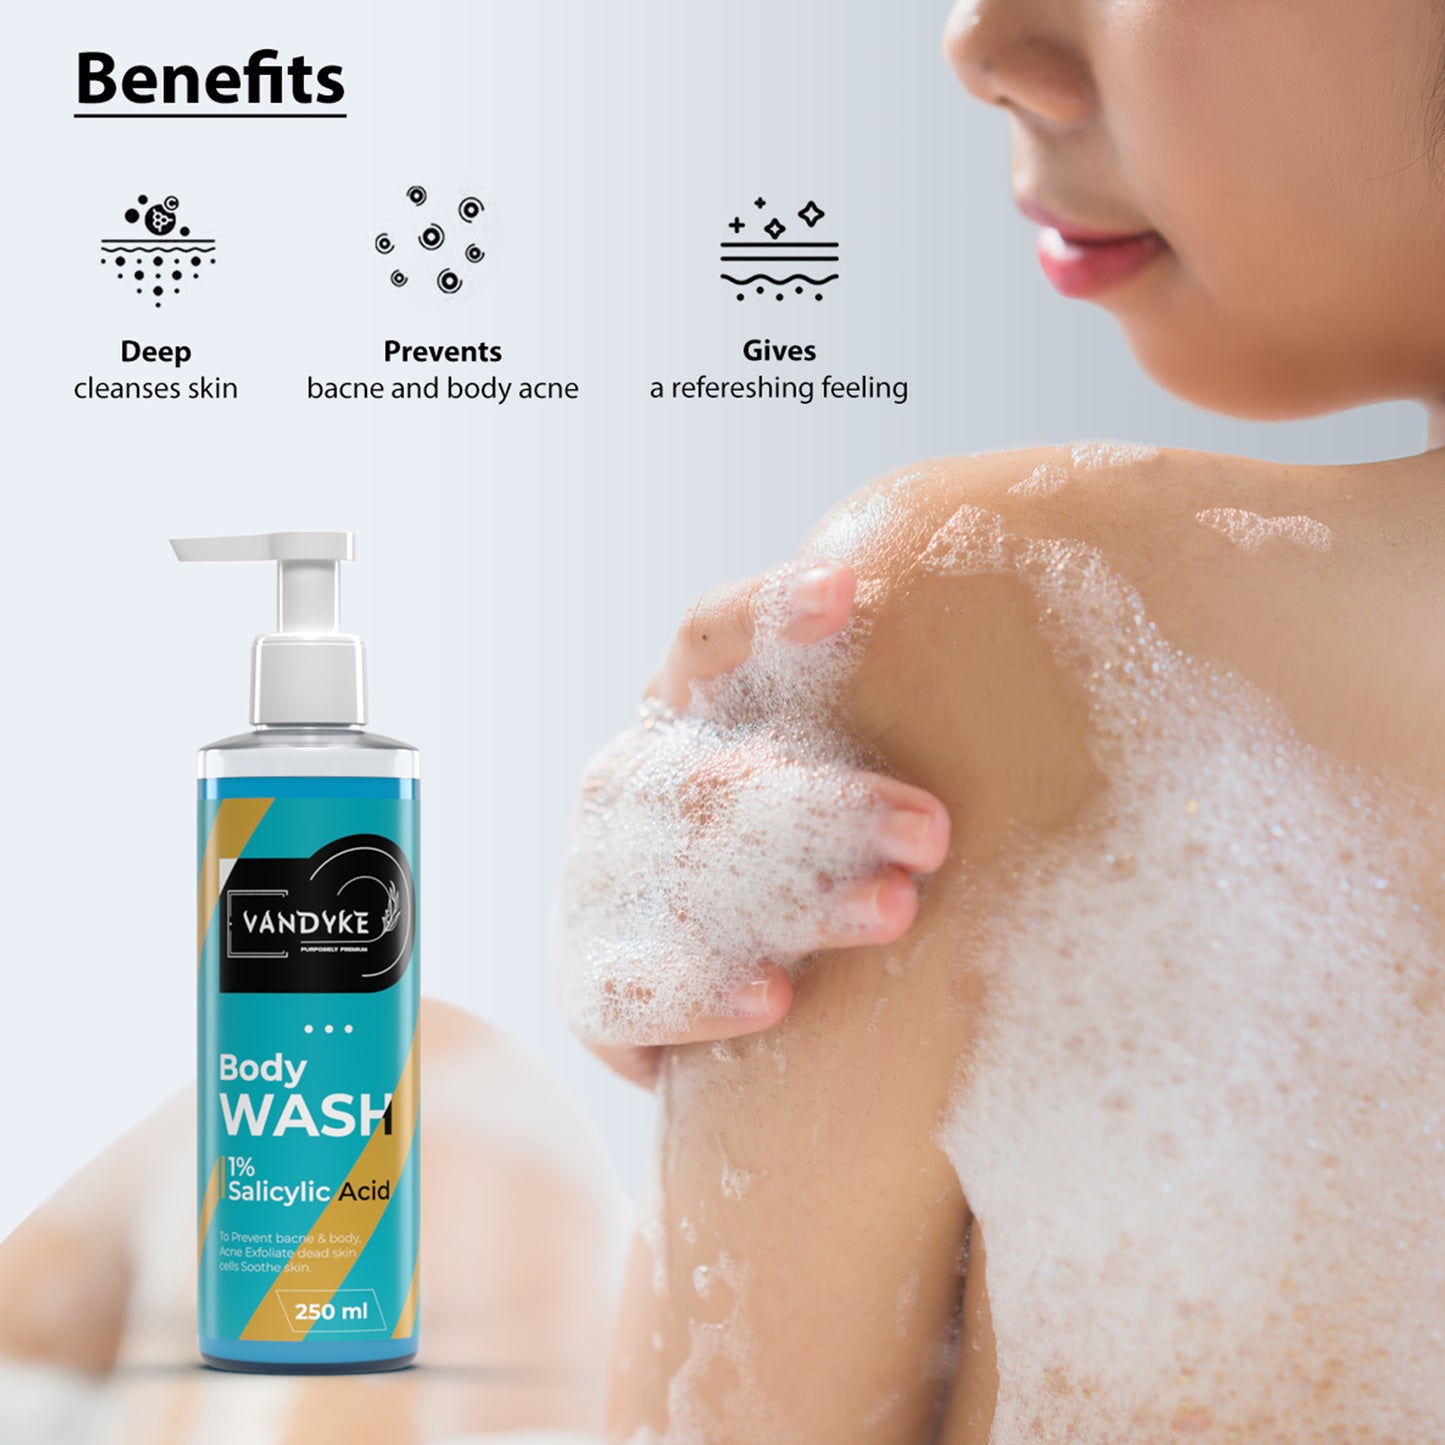 Vandyke 1% Salicylic Acid Body Wash Prevents Body Acne Paraben, SLS free Shower Gel, 250ml